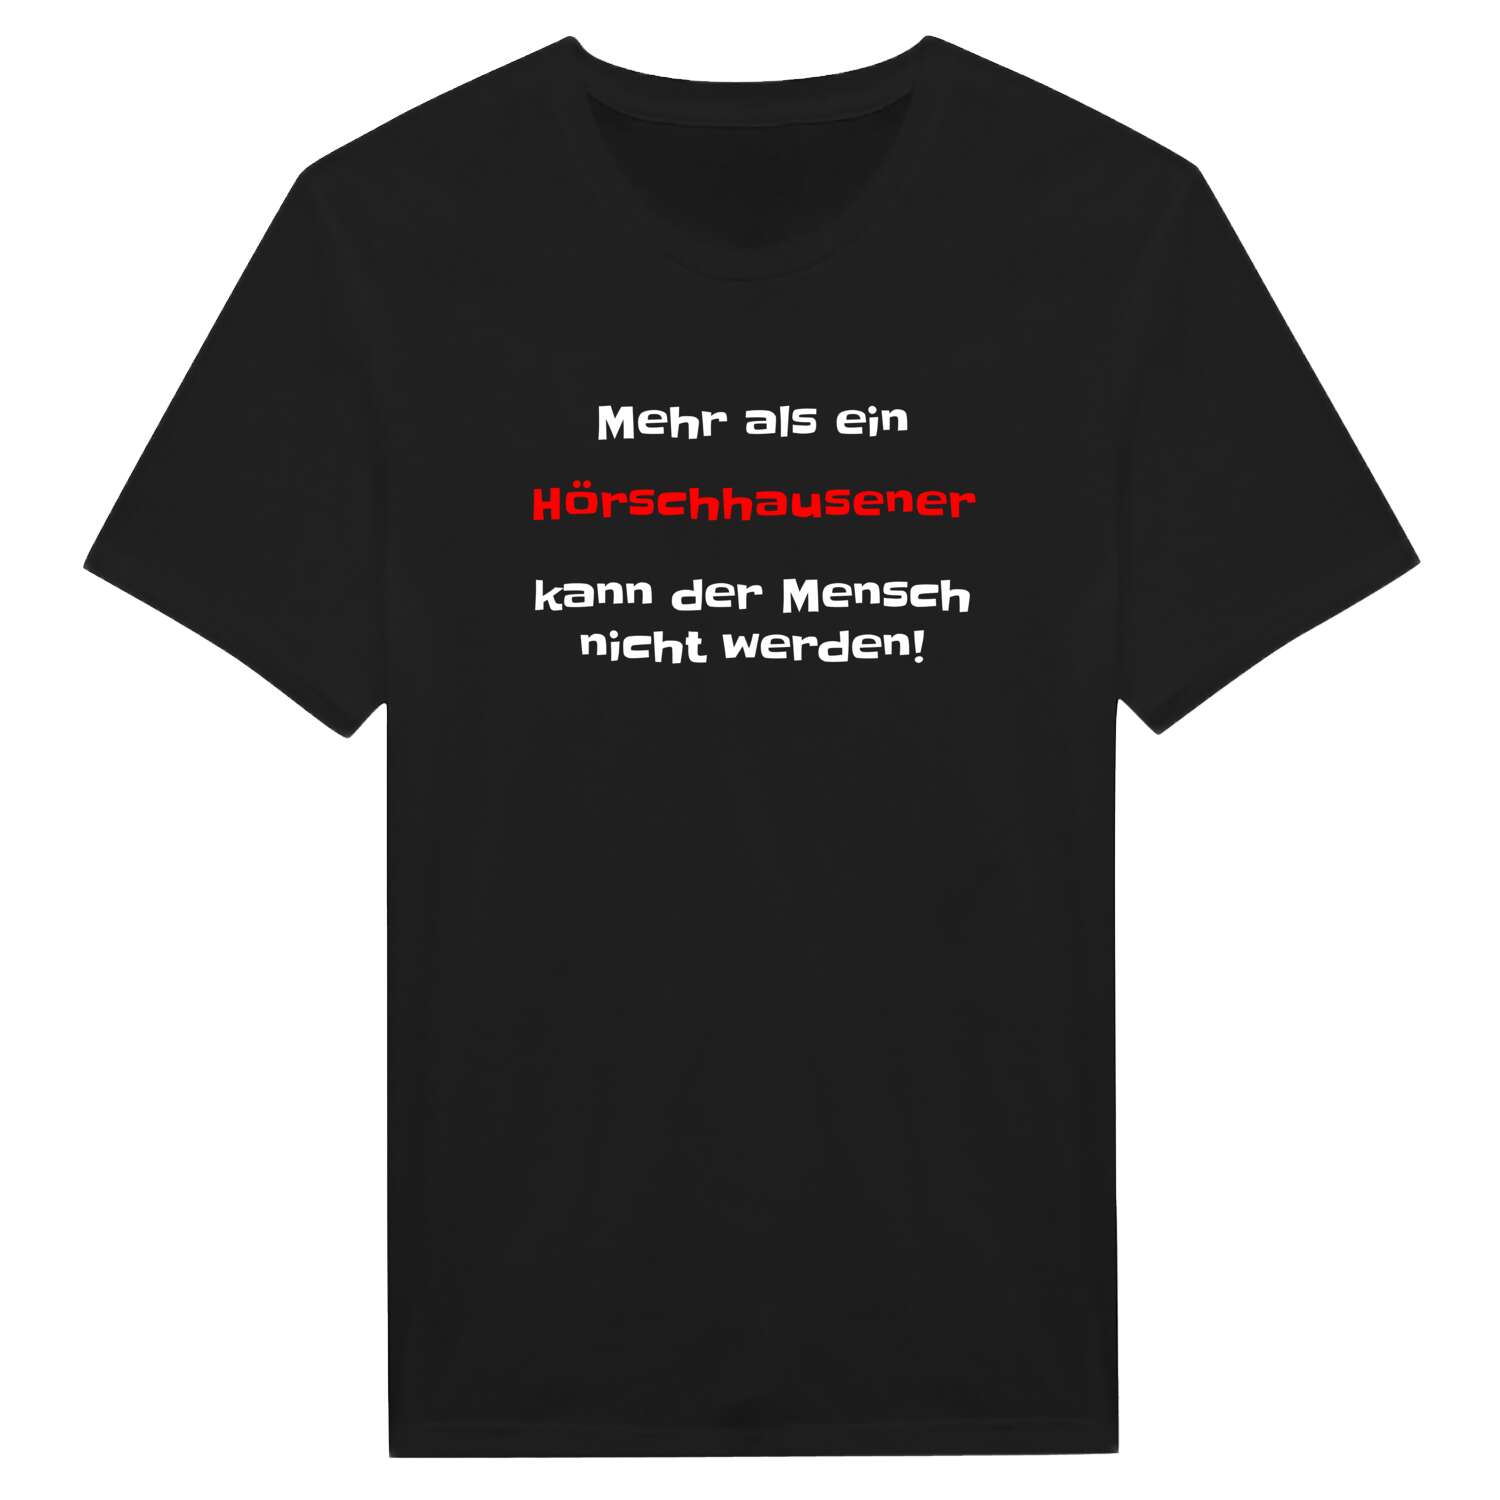 Hörschhausen T-Shirt »Mehr als ein«